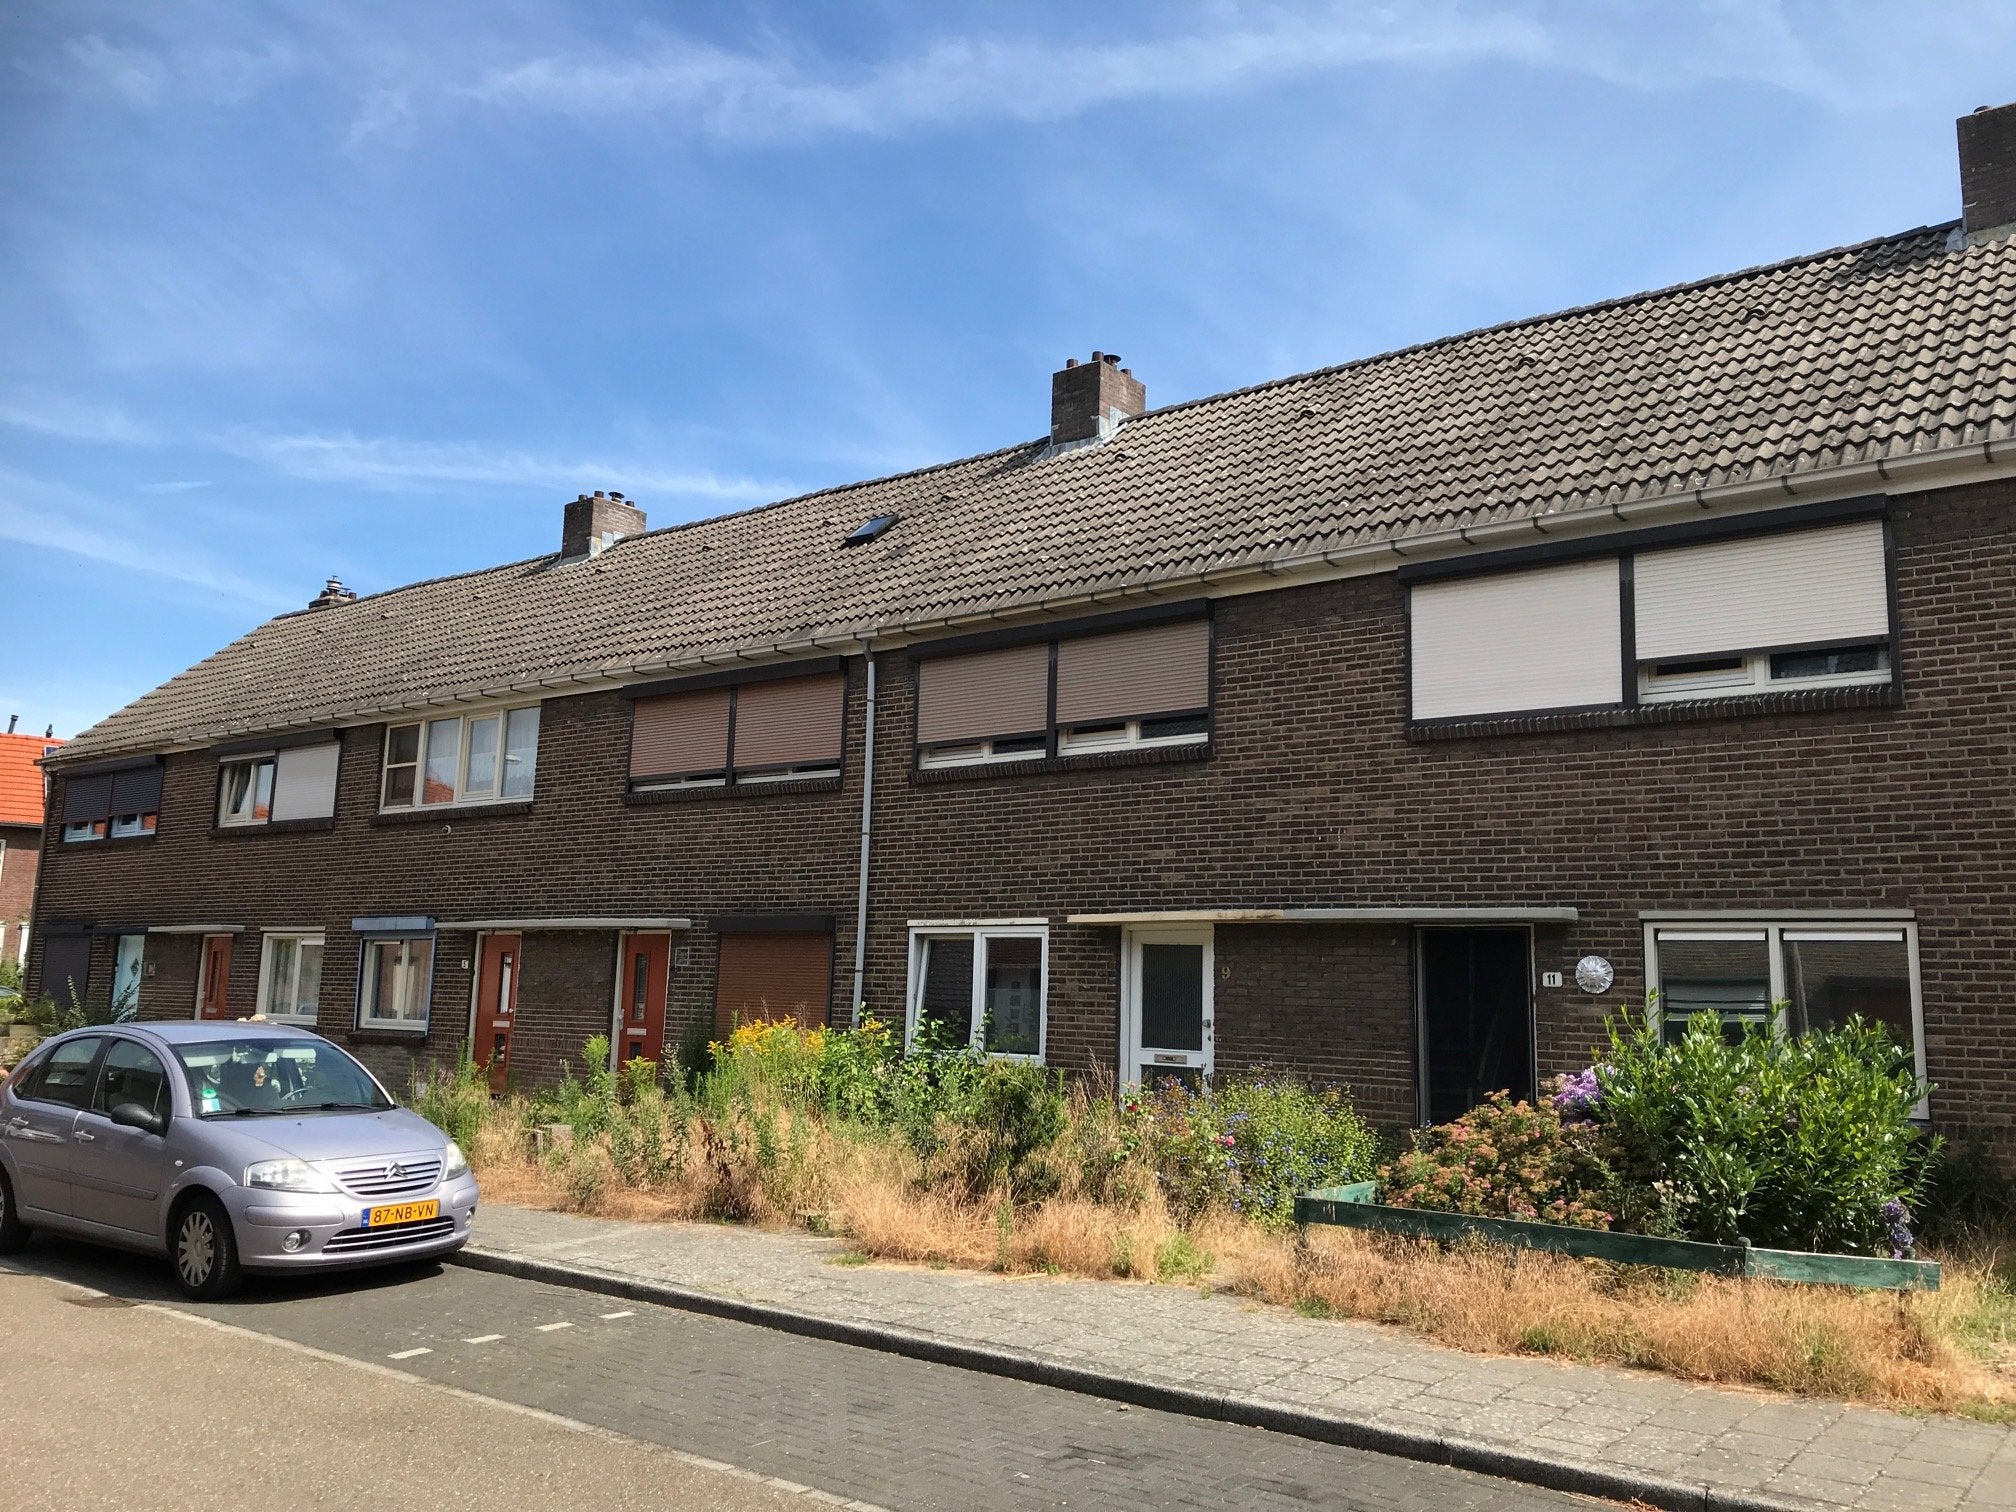 Bekijk for 1/15 van house in Heerlen